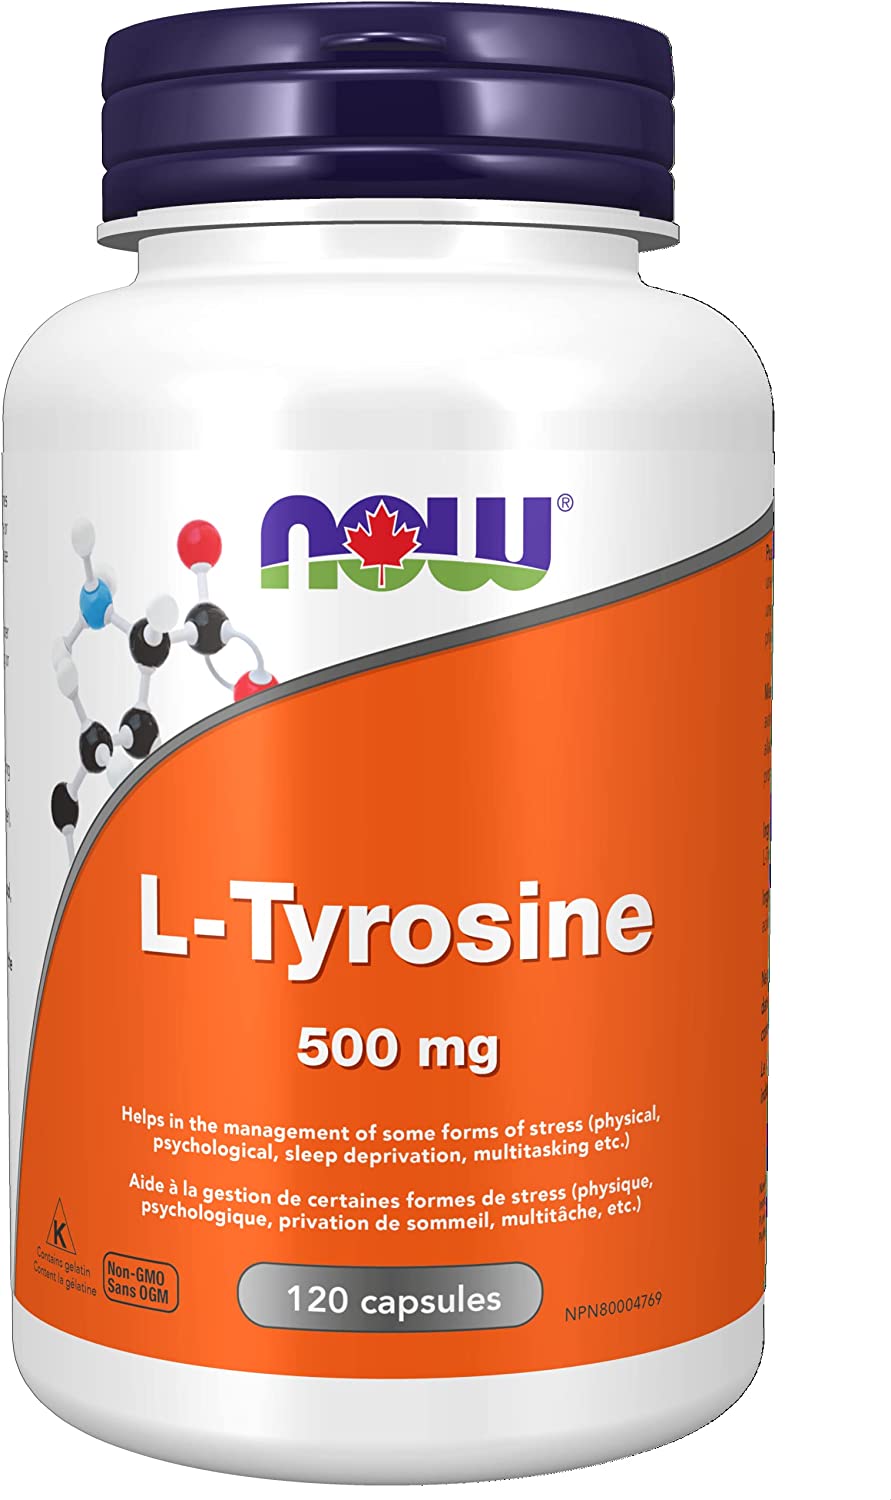 JETZT L-Tyrosin 500 mg (FreeForm)